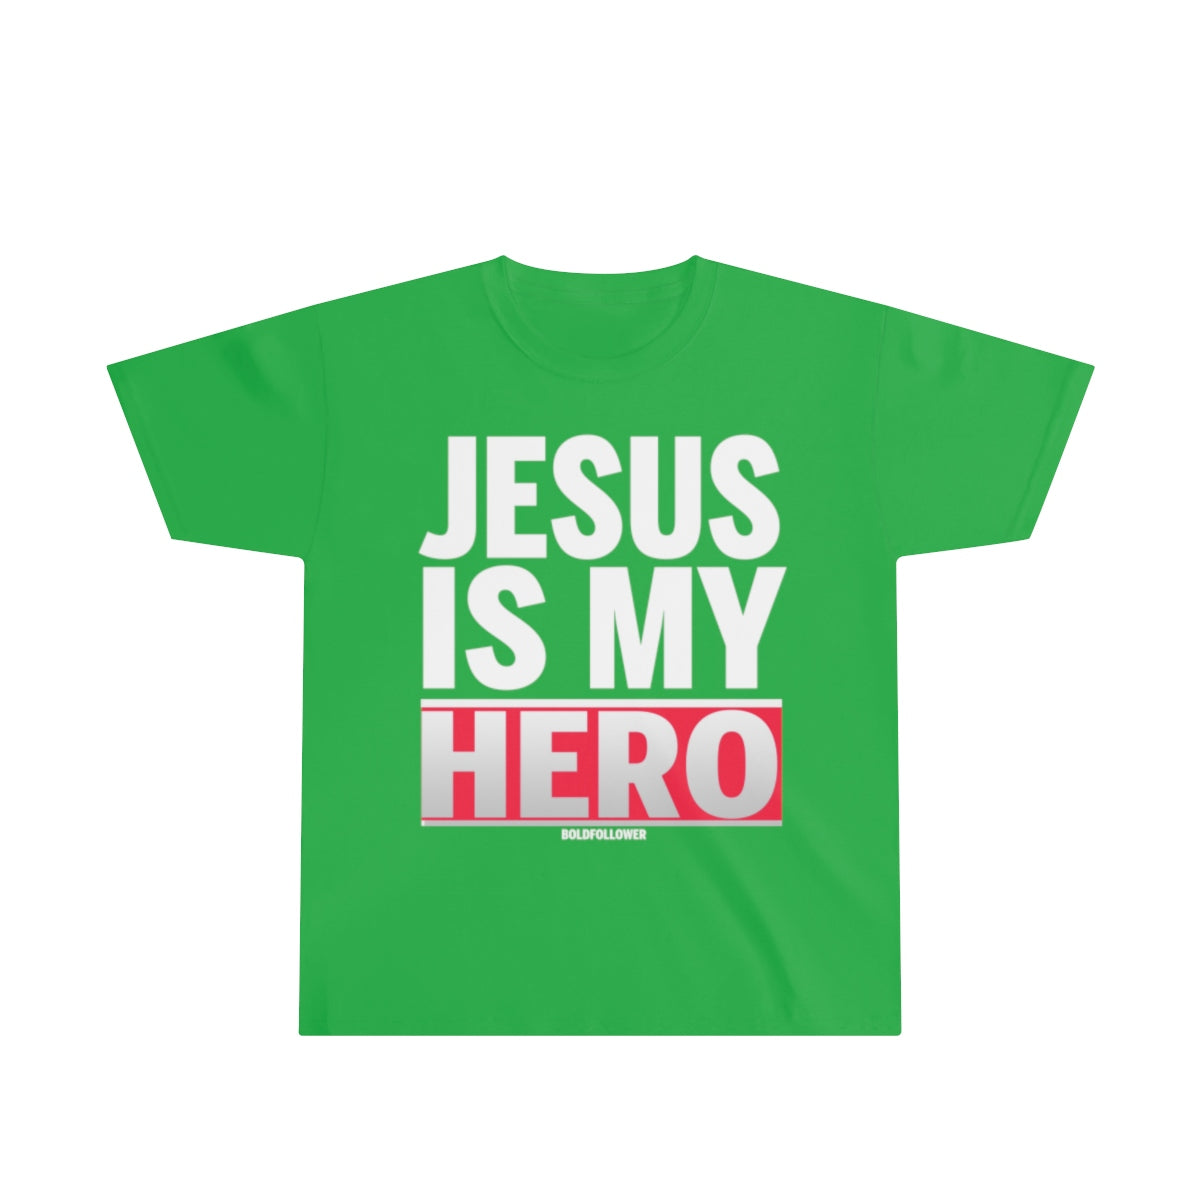 jesus is my hero t shirt